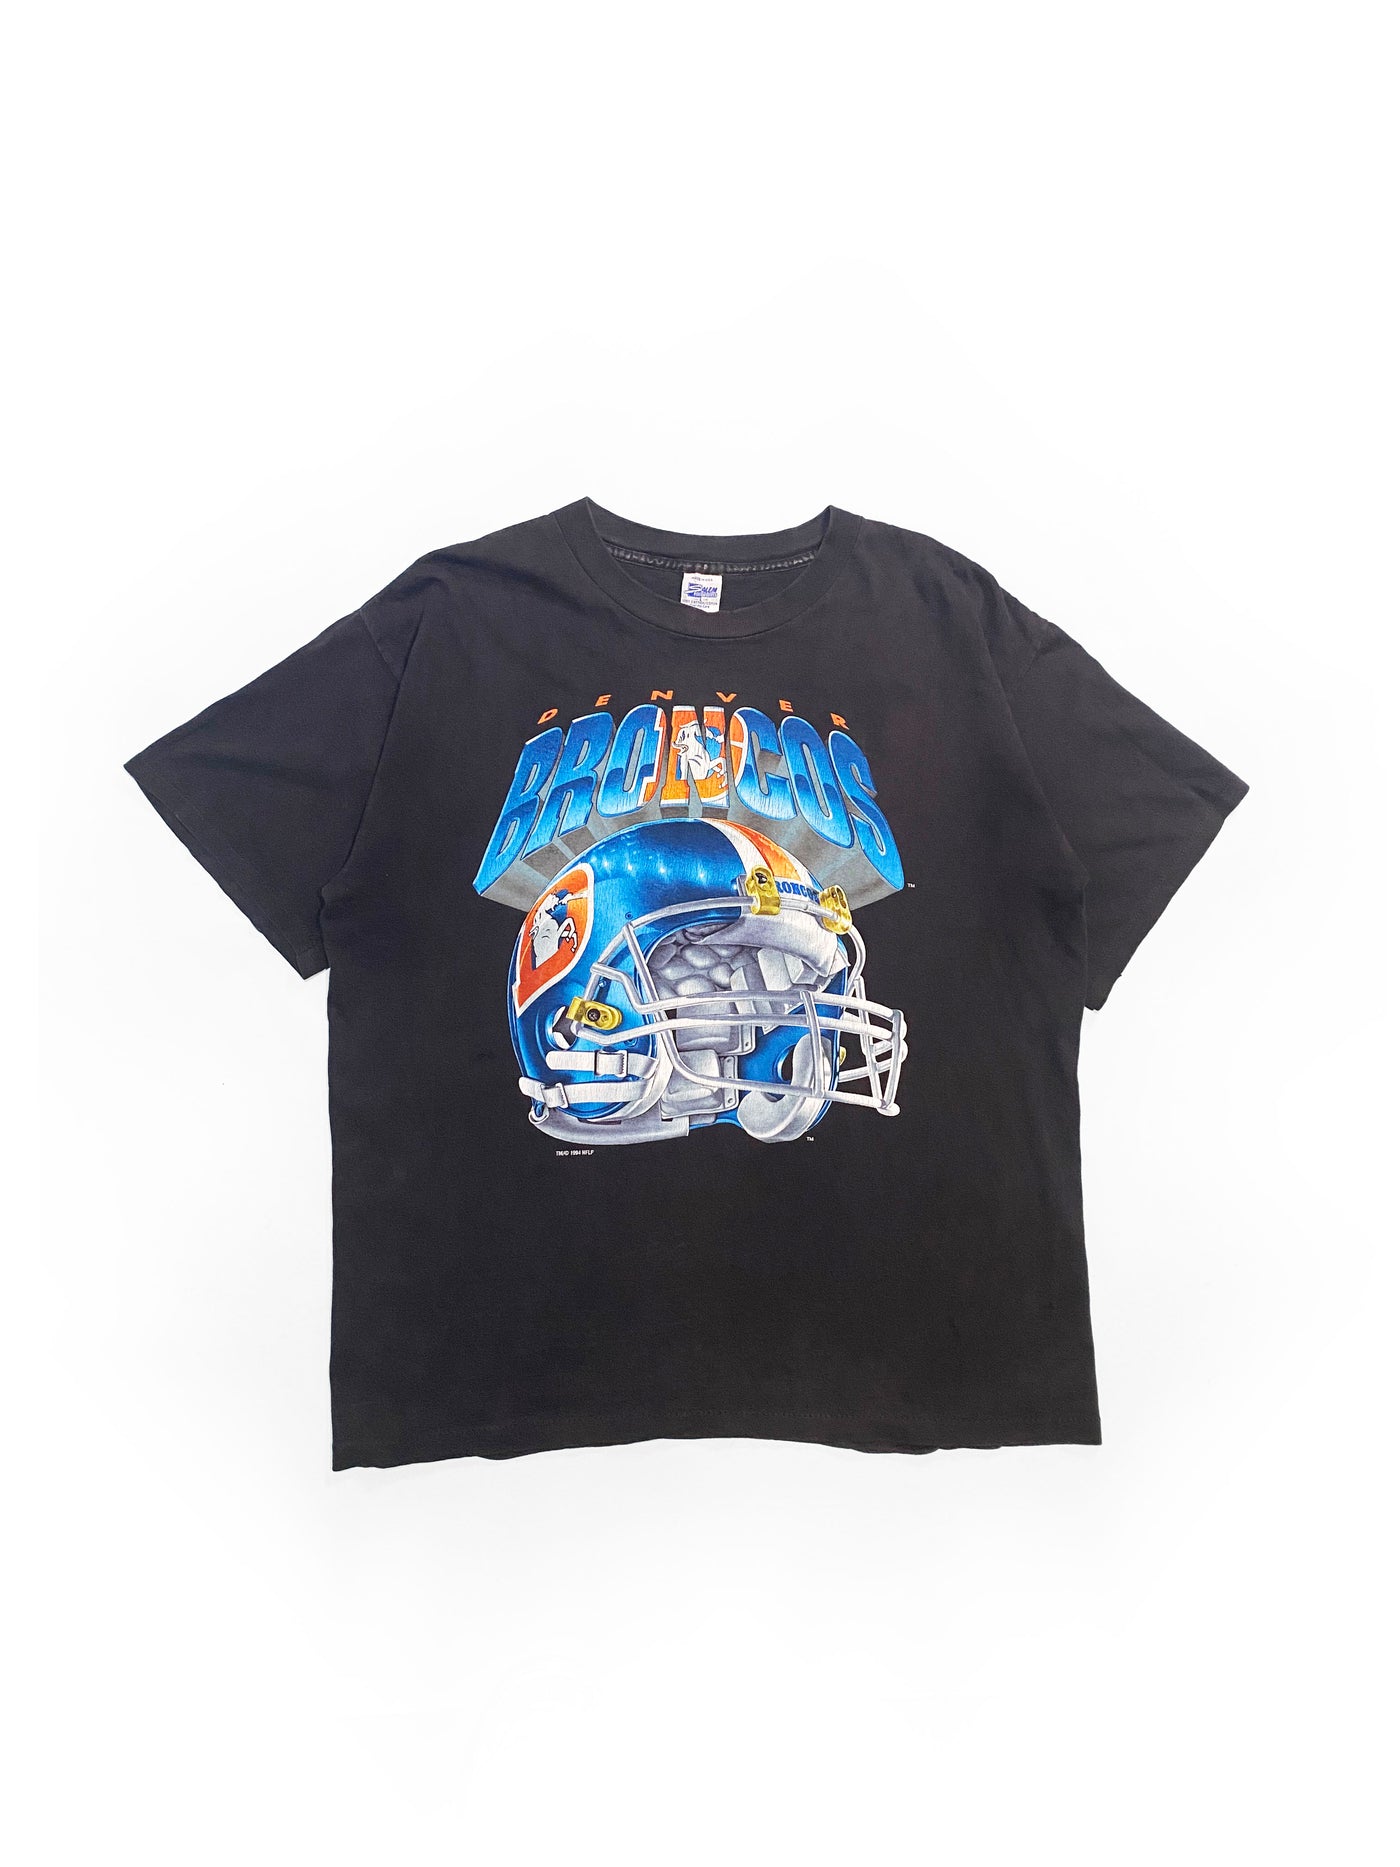 Vintage 1994 Denver Broncos T-Shirt